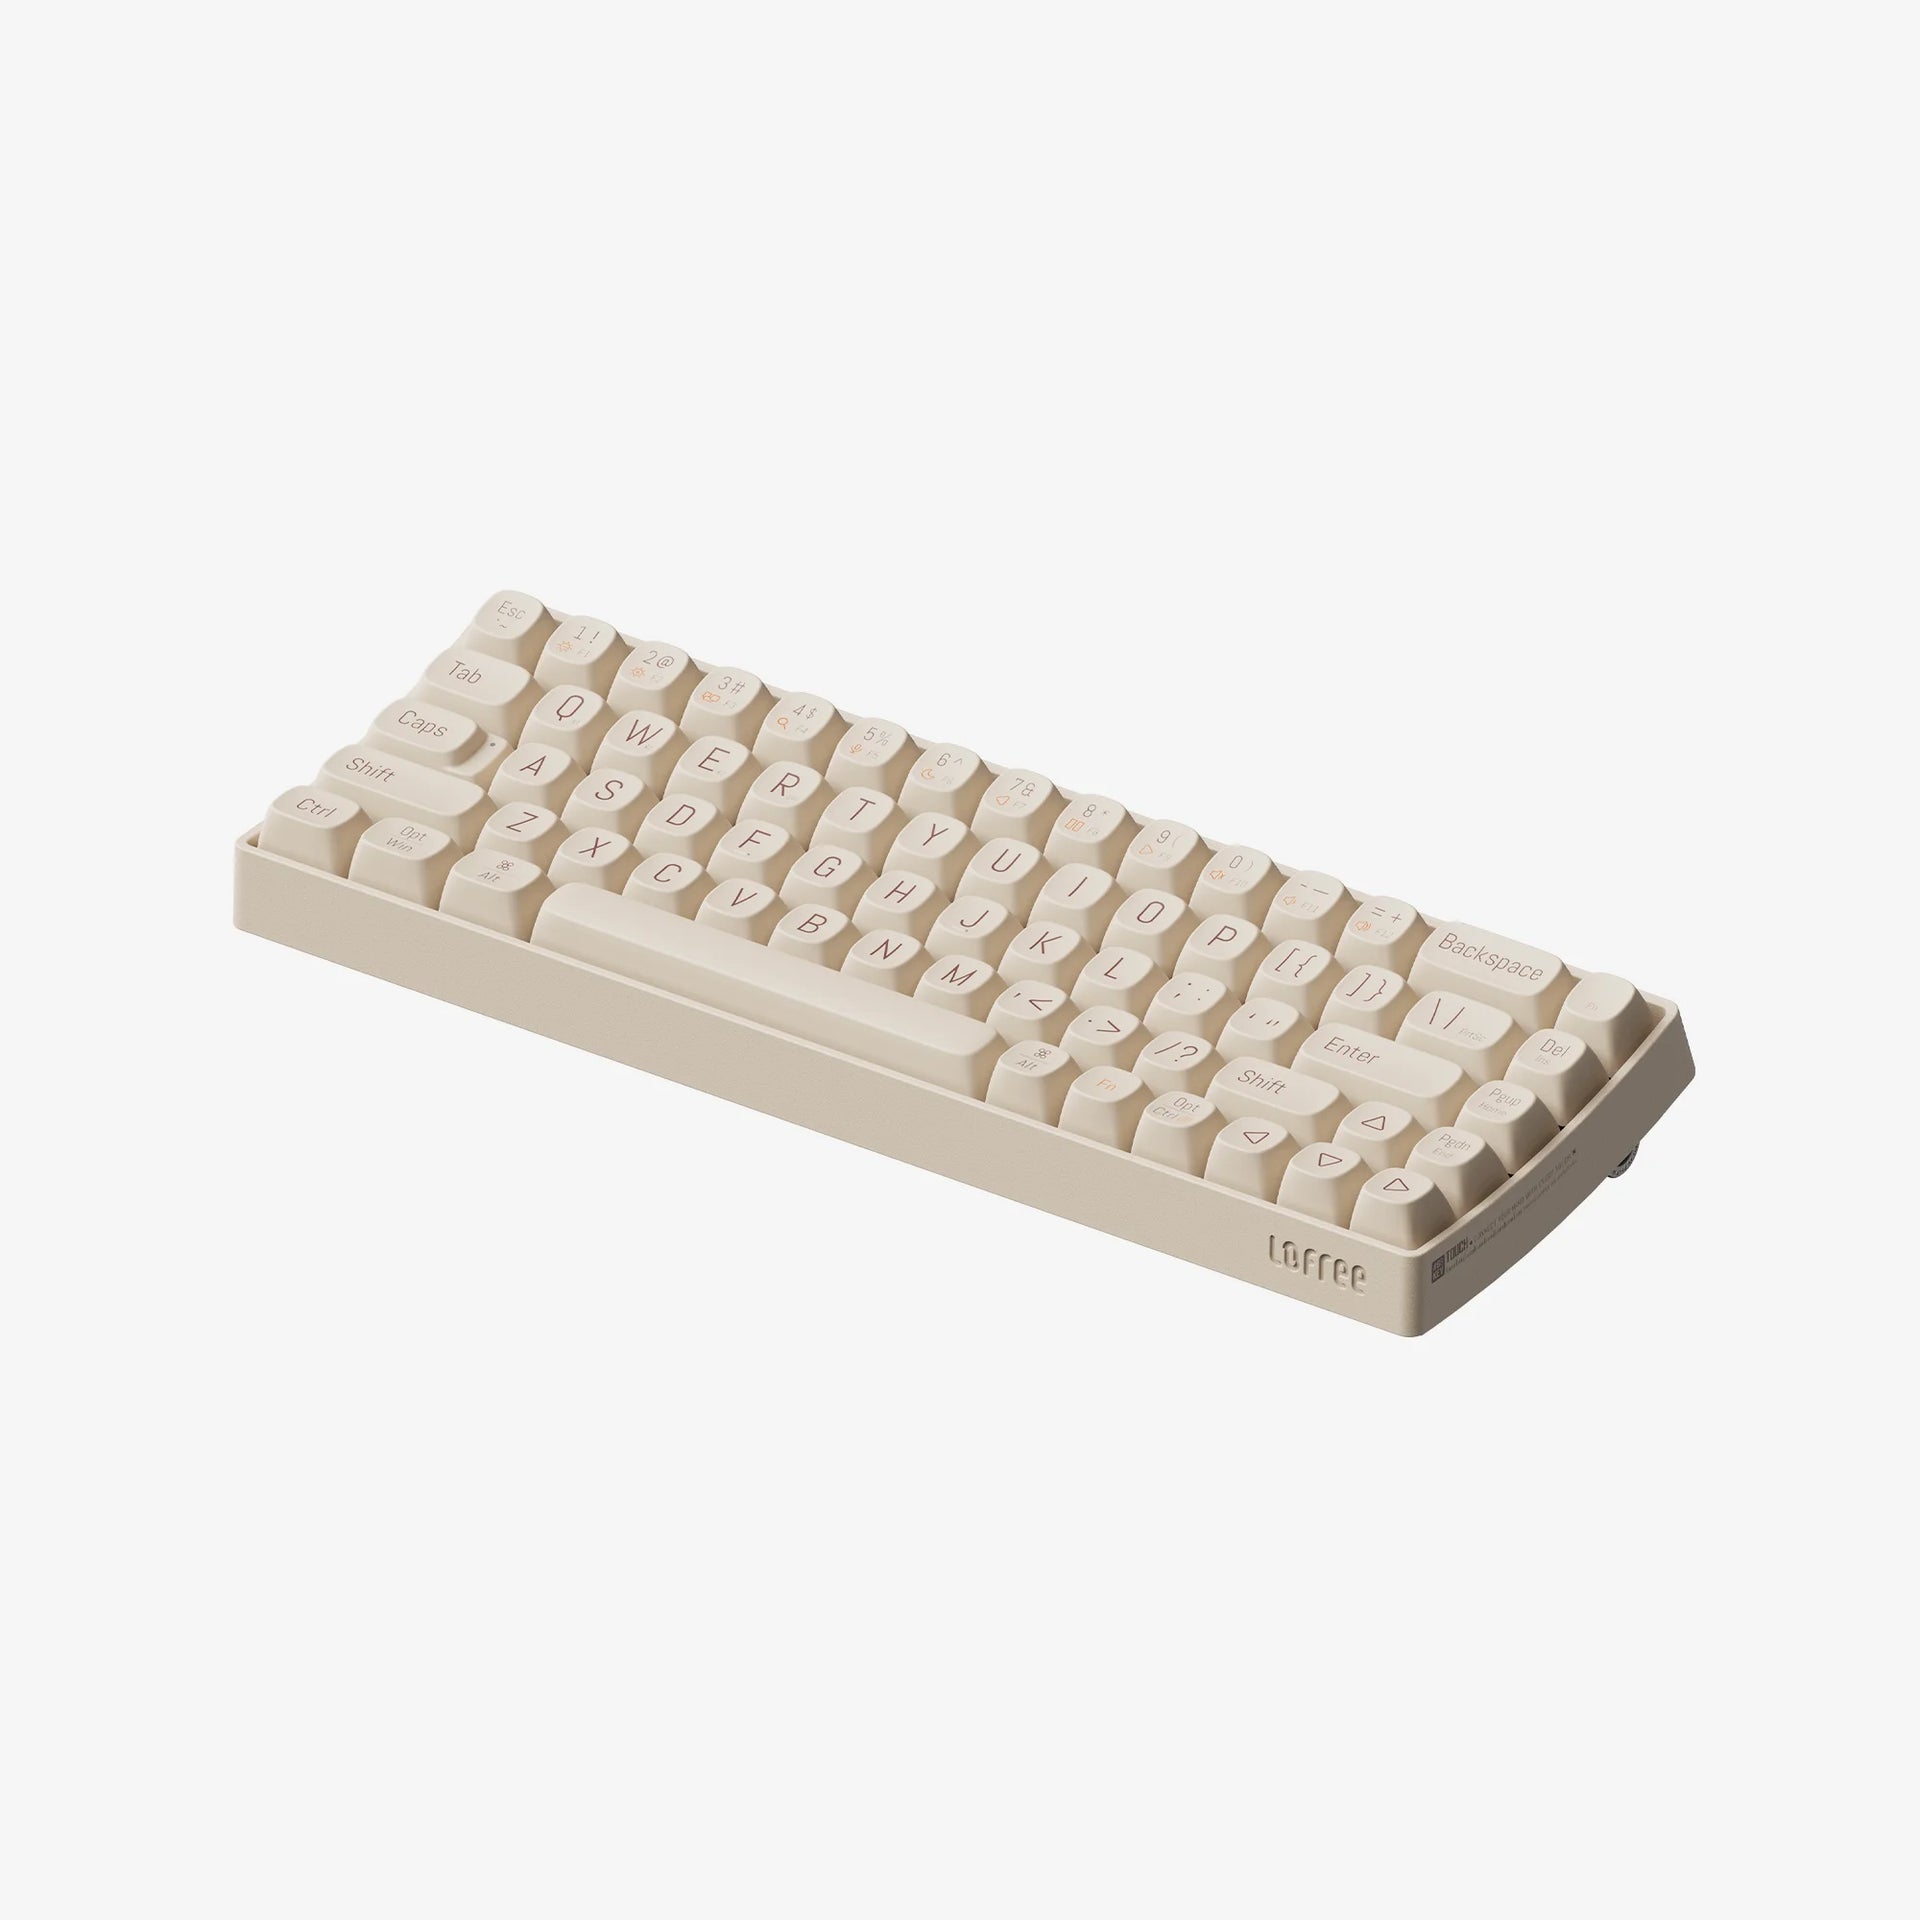 Tofu68 Mechanical Keyboard - Tofu68